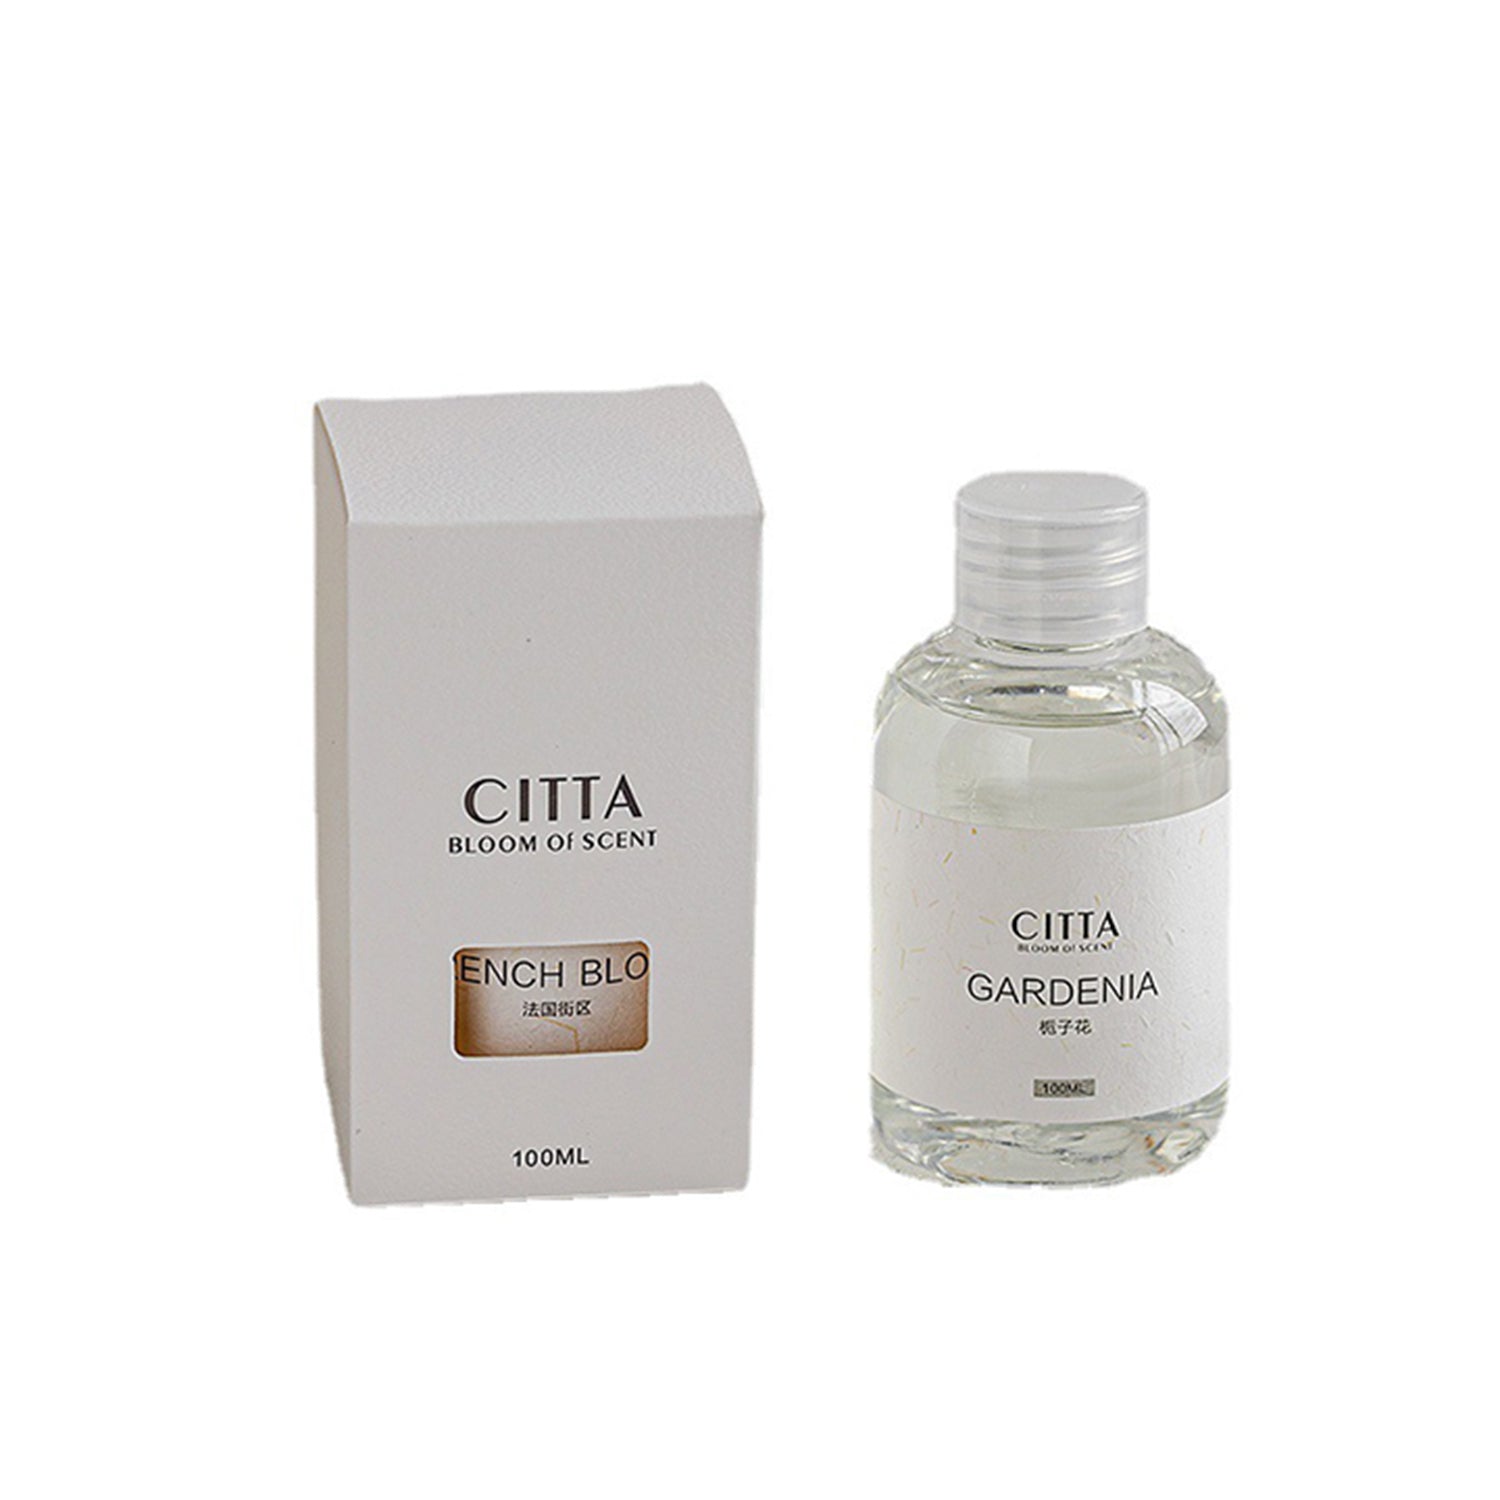 CITTA Premium Essential Oil 100ML Aromatherapy Reed Diffuser Refill Reed Diffuser Refill CITTA 